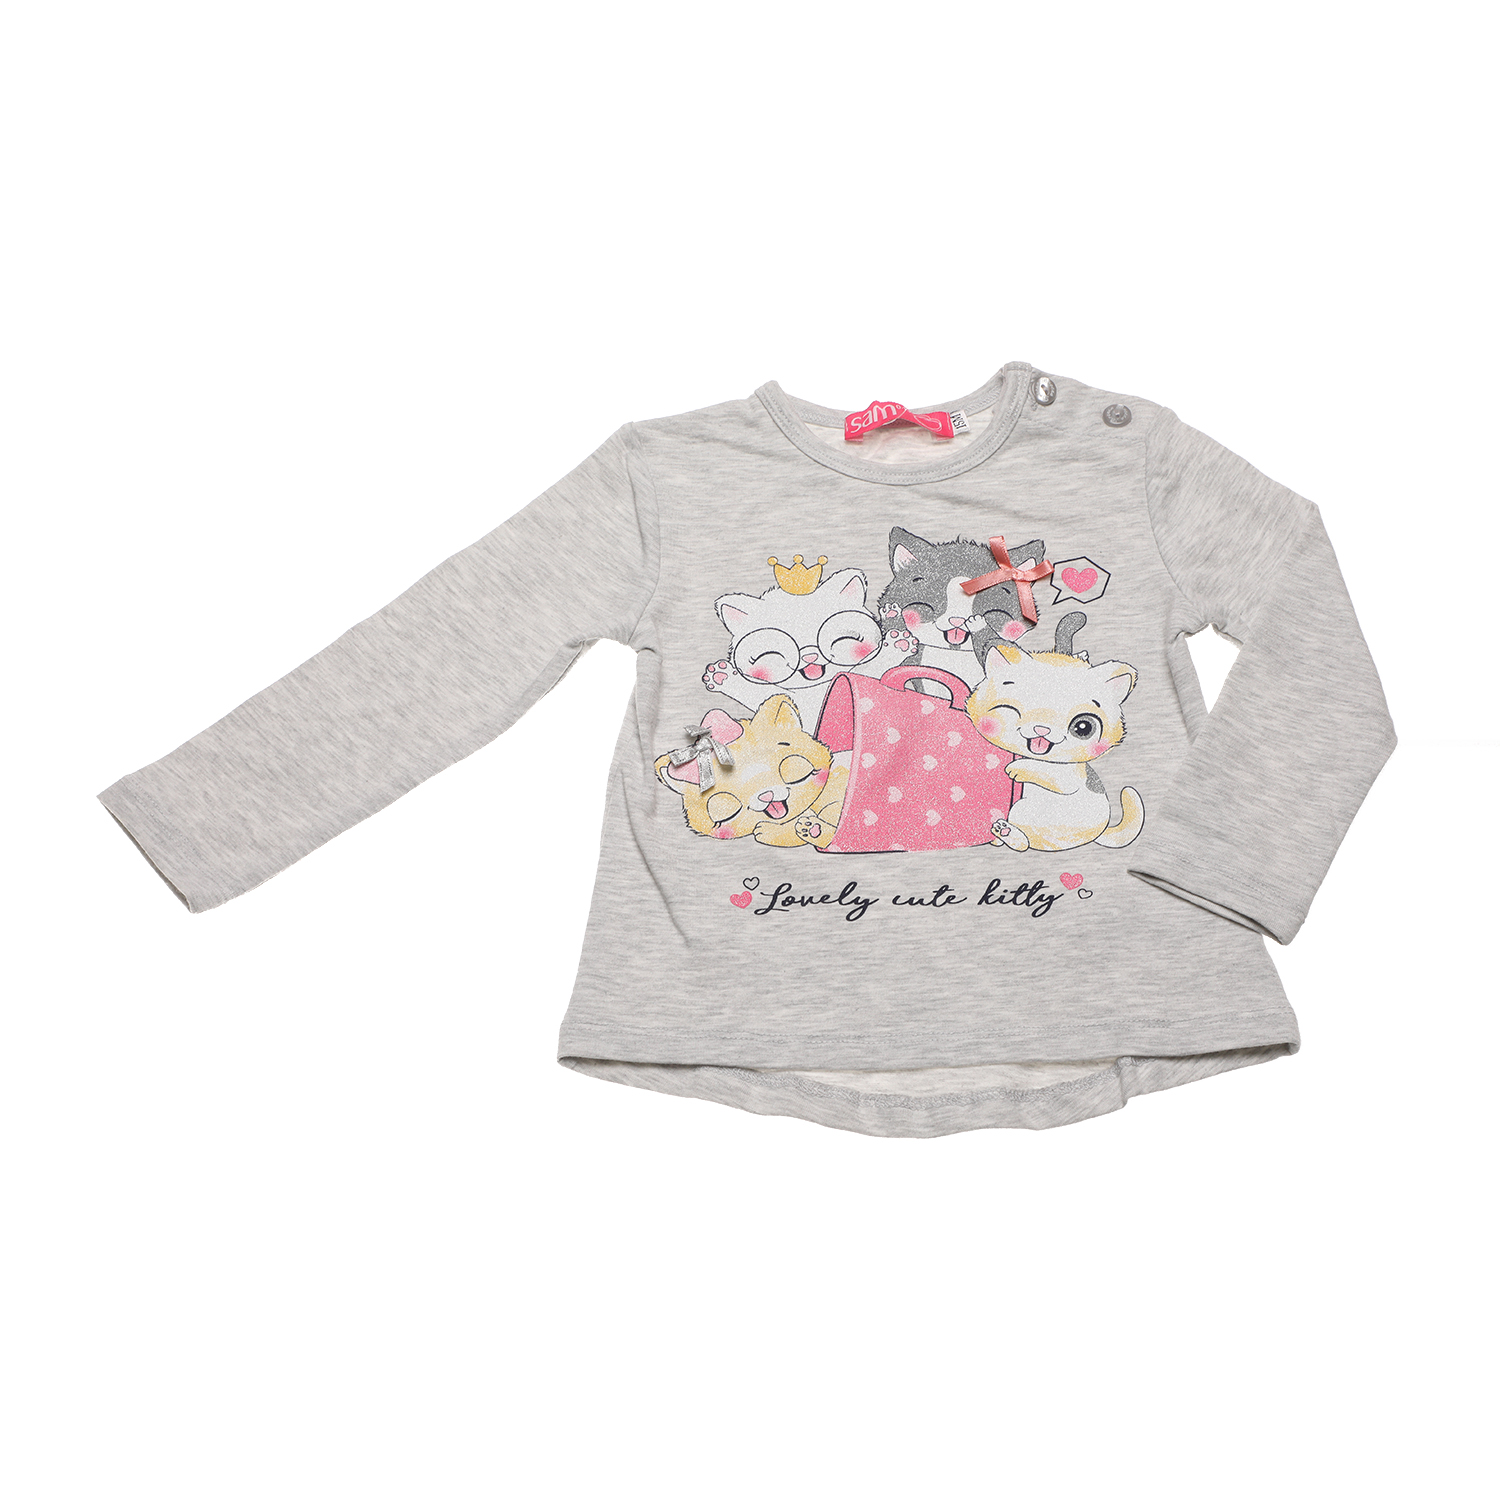 Παιδικά/Baby/Ρούχα/Μπλούζες SAM 0-13 - Βρφική φούτερ μπλούζα SAM 0-13 γκρι